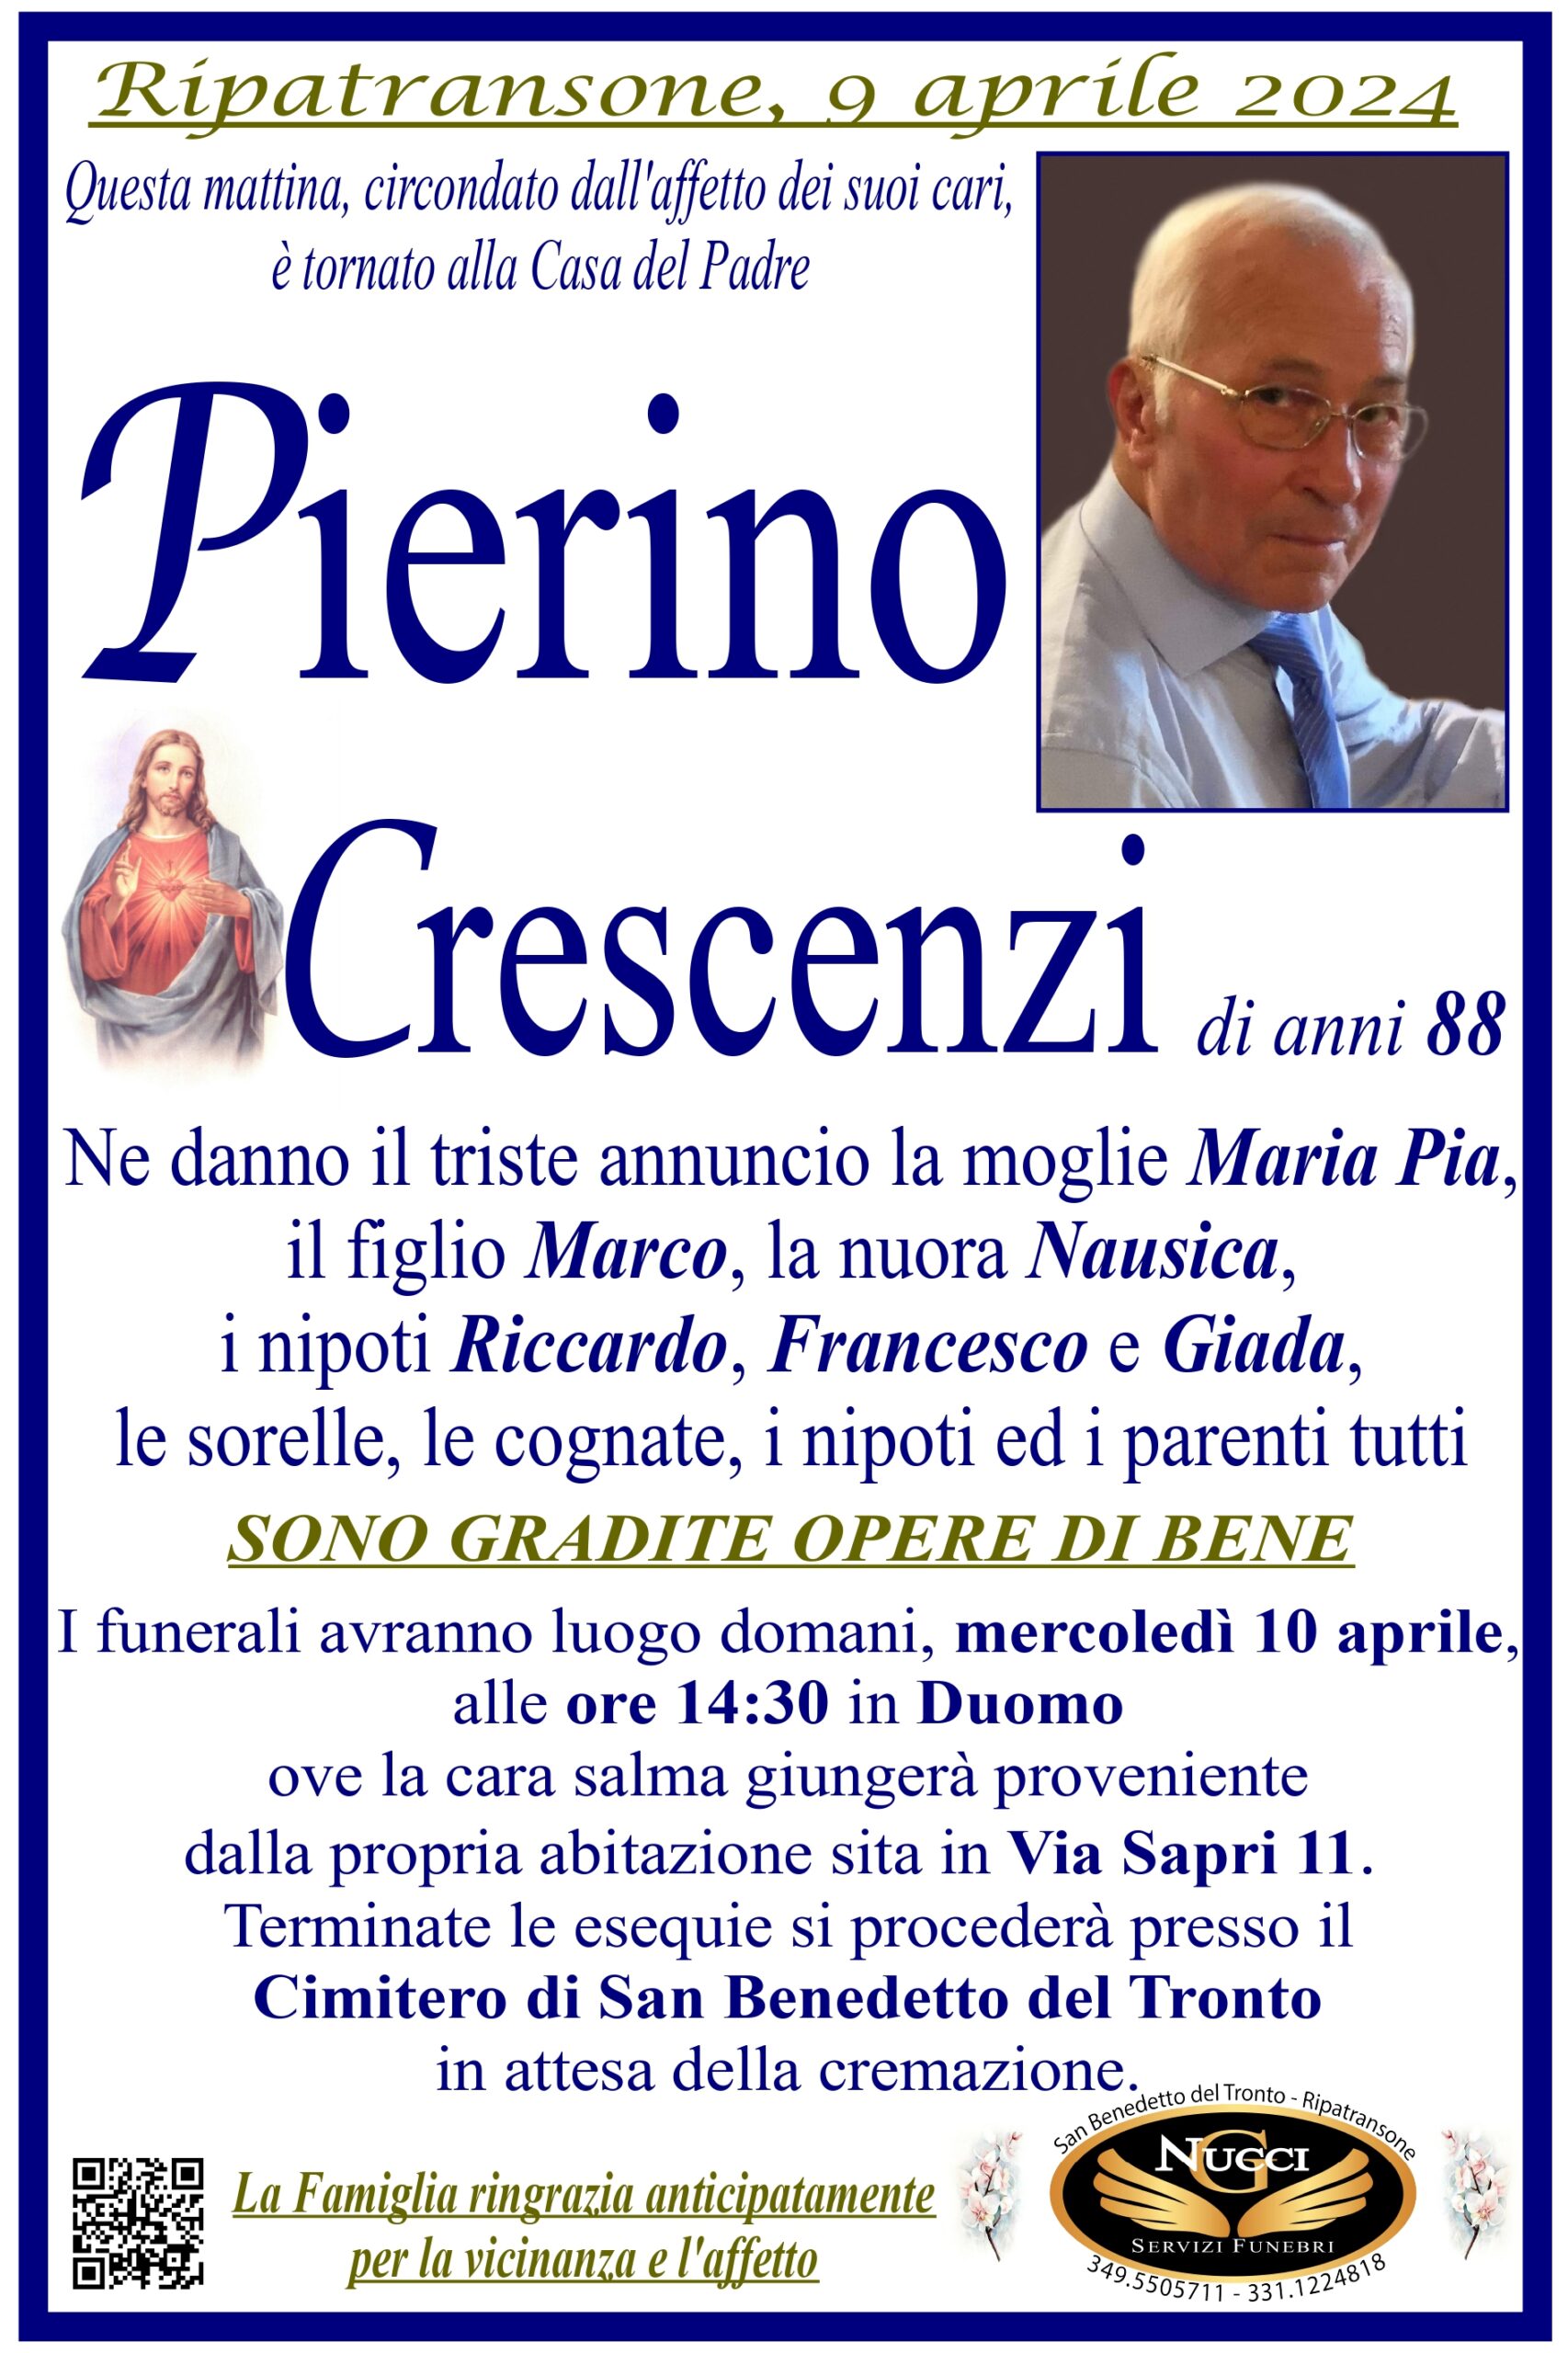 Pierino Crescenzi